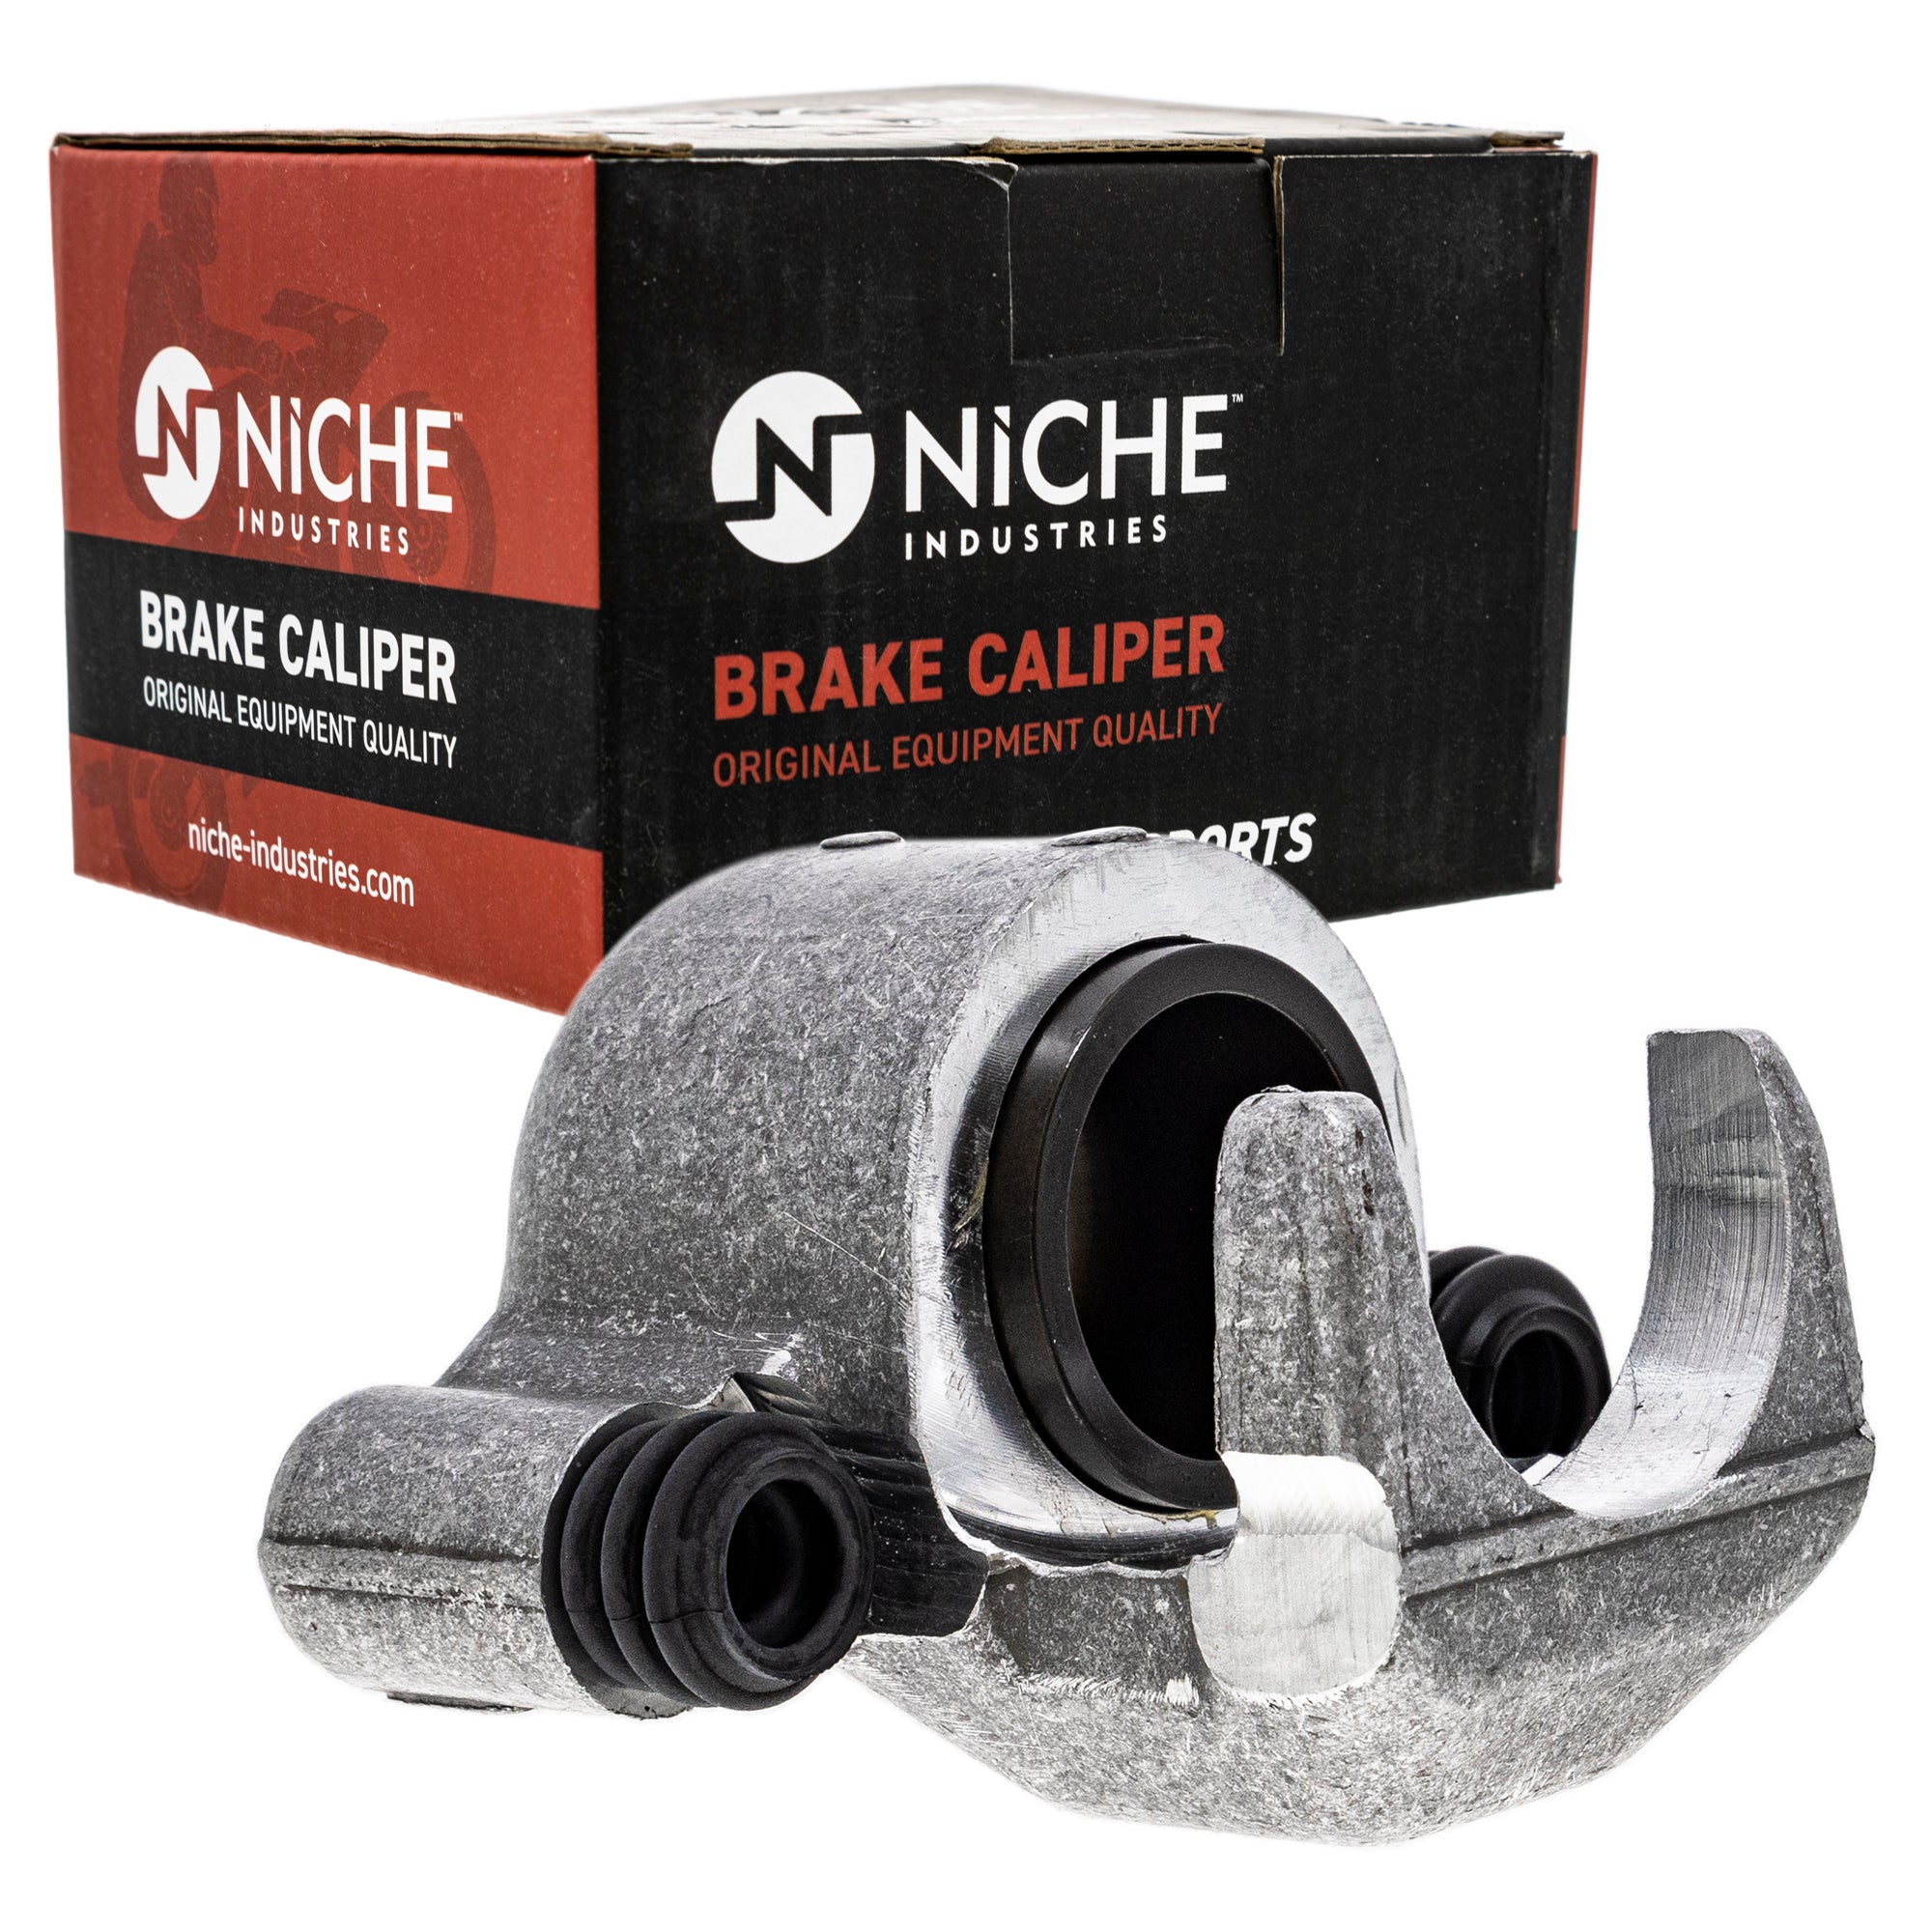 NICHE MK1001012 Brake Caliper Kit